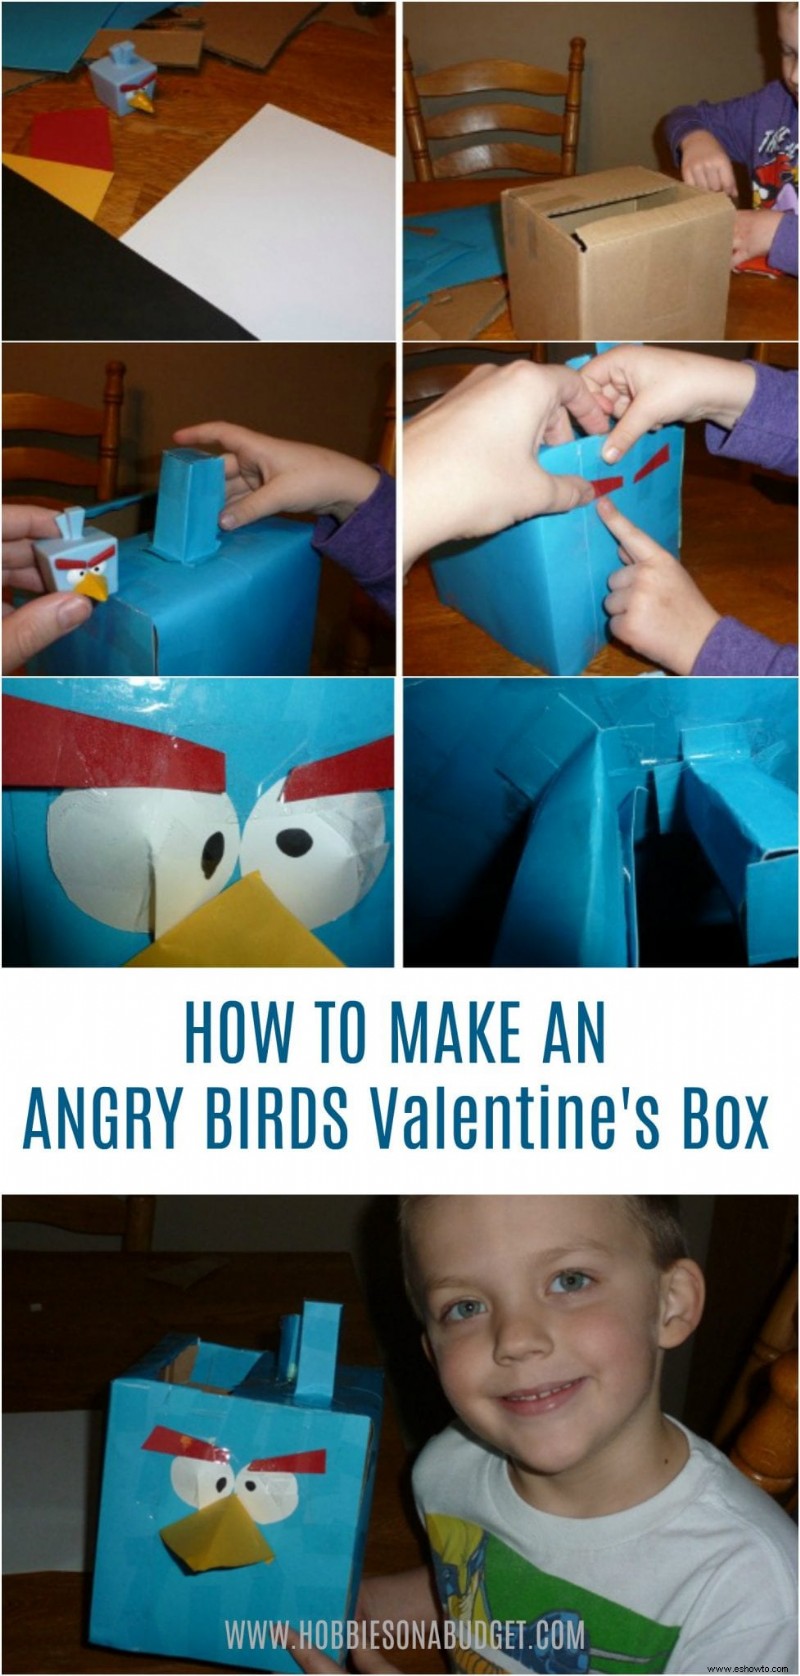 Cómo hacer una caja de San Valentín de Angry Birds